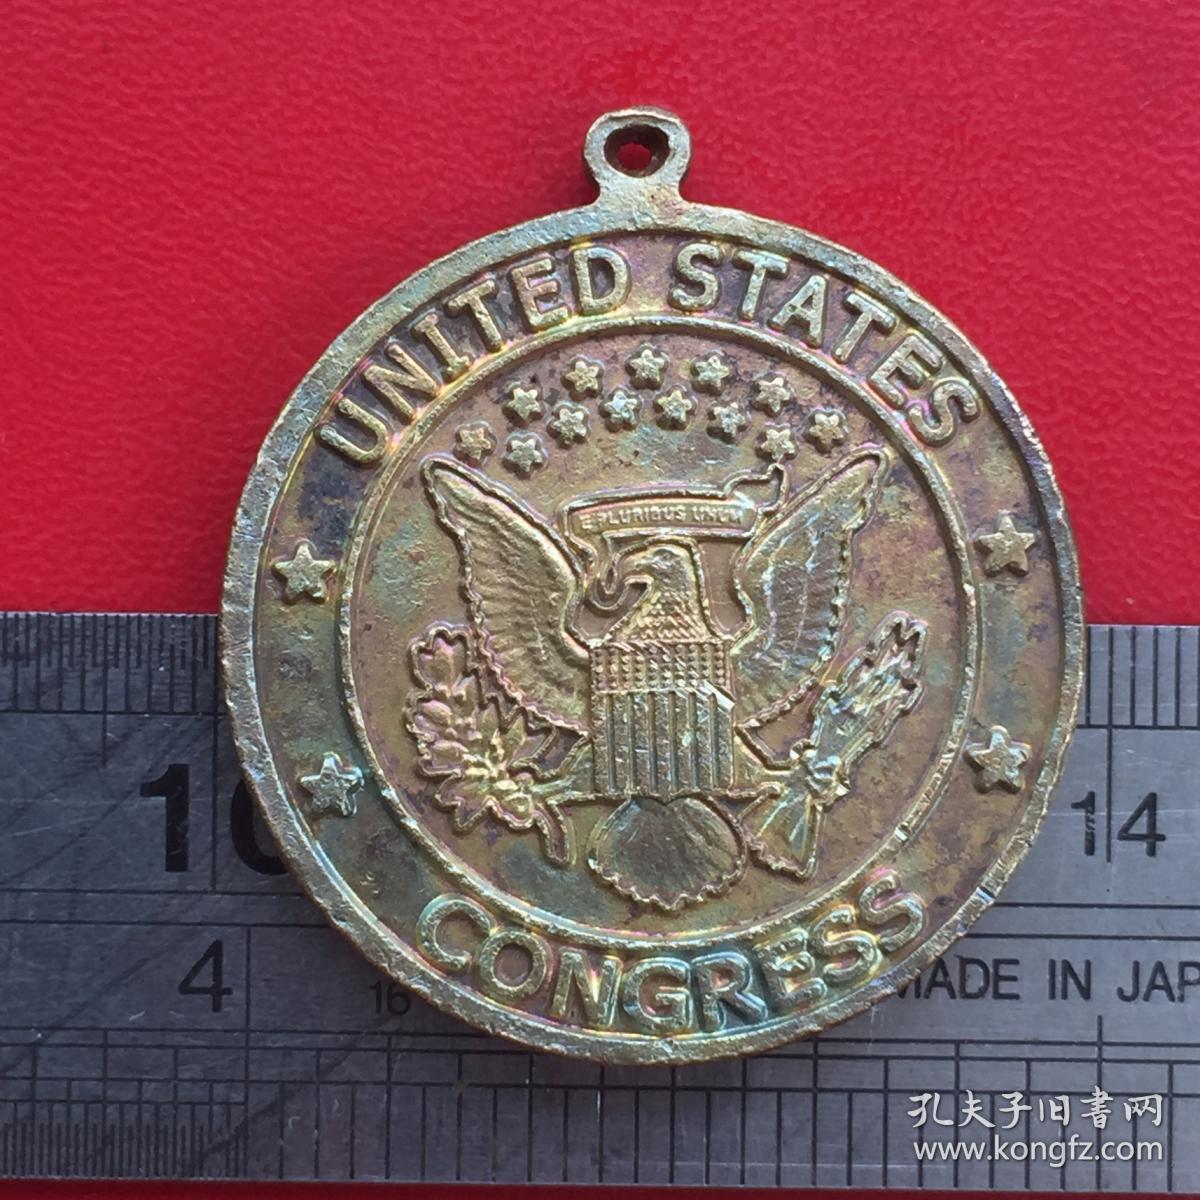 A971旧铜美国国会众议院会员代表勋章铜牌章挂件吊坠旧货珍藏收藏